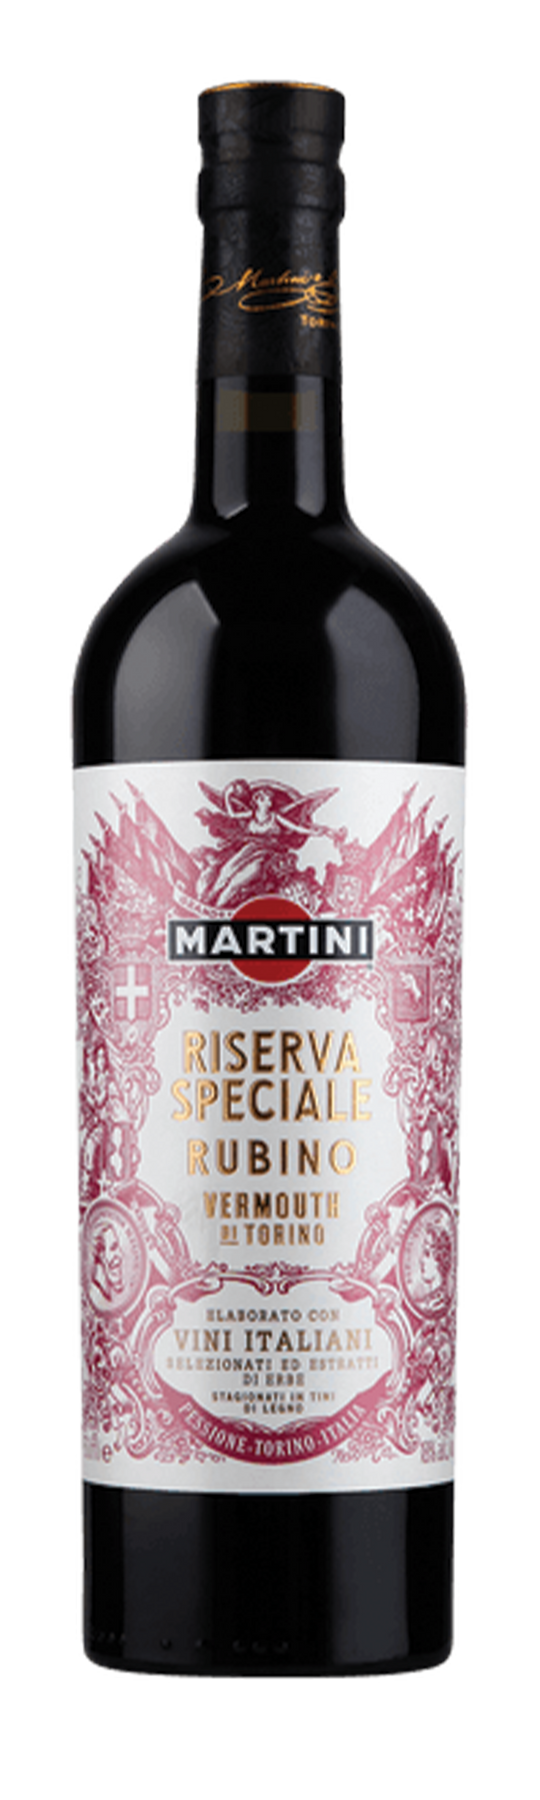 Martini Riserva Speciale Rubino 18% 75cl